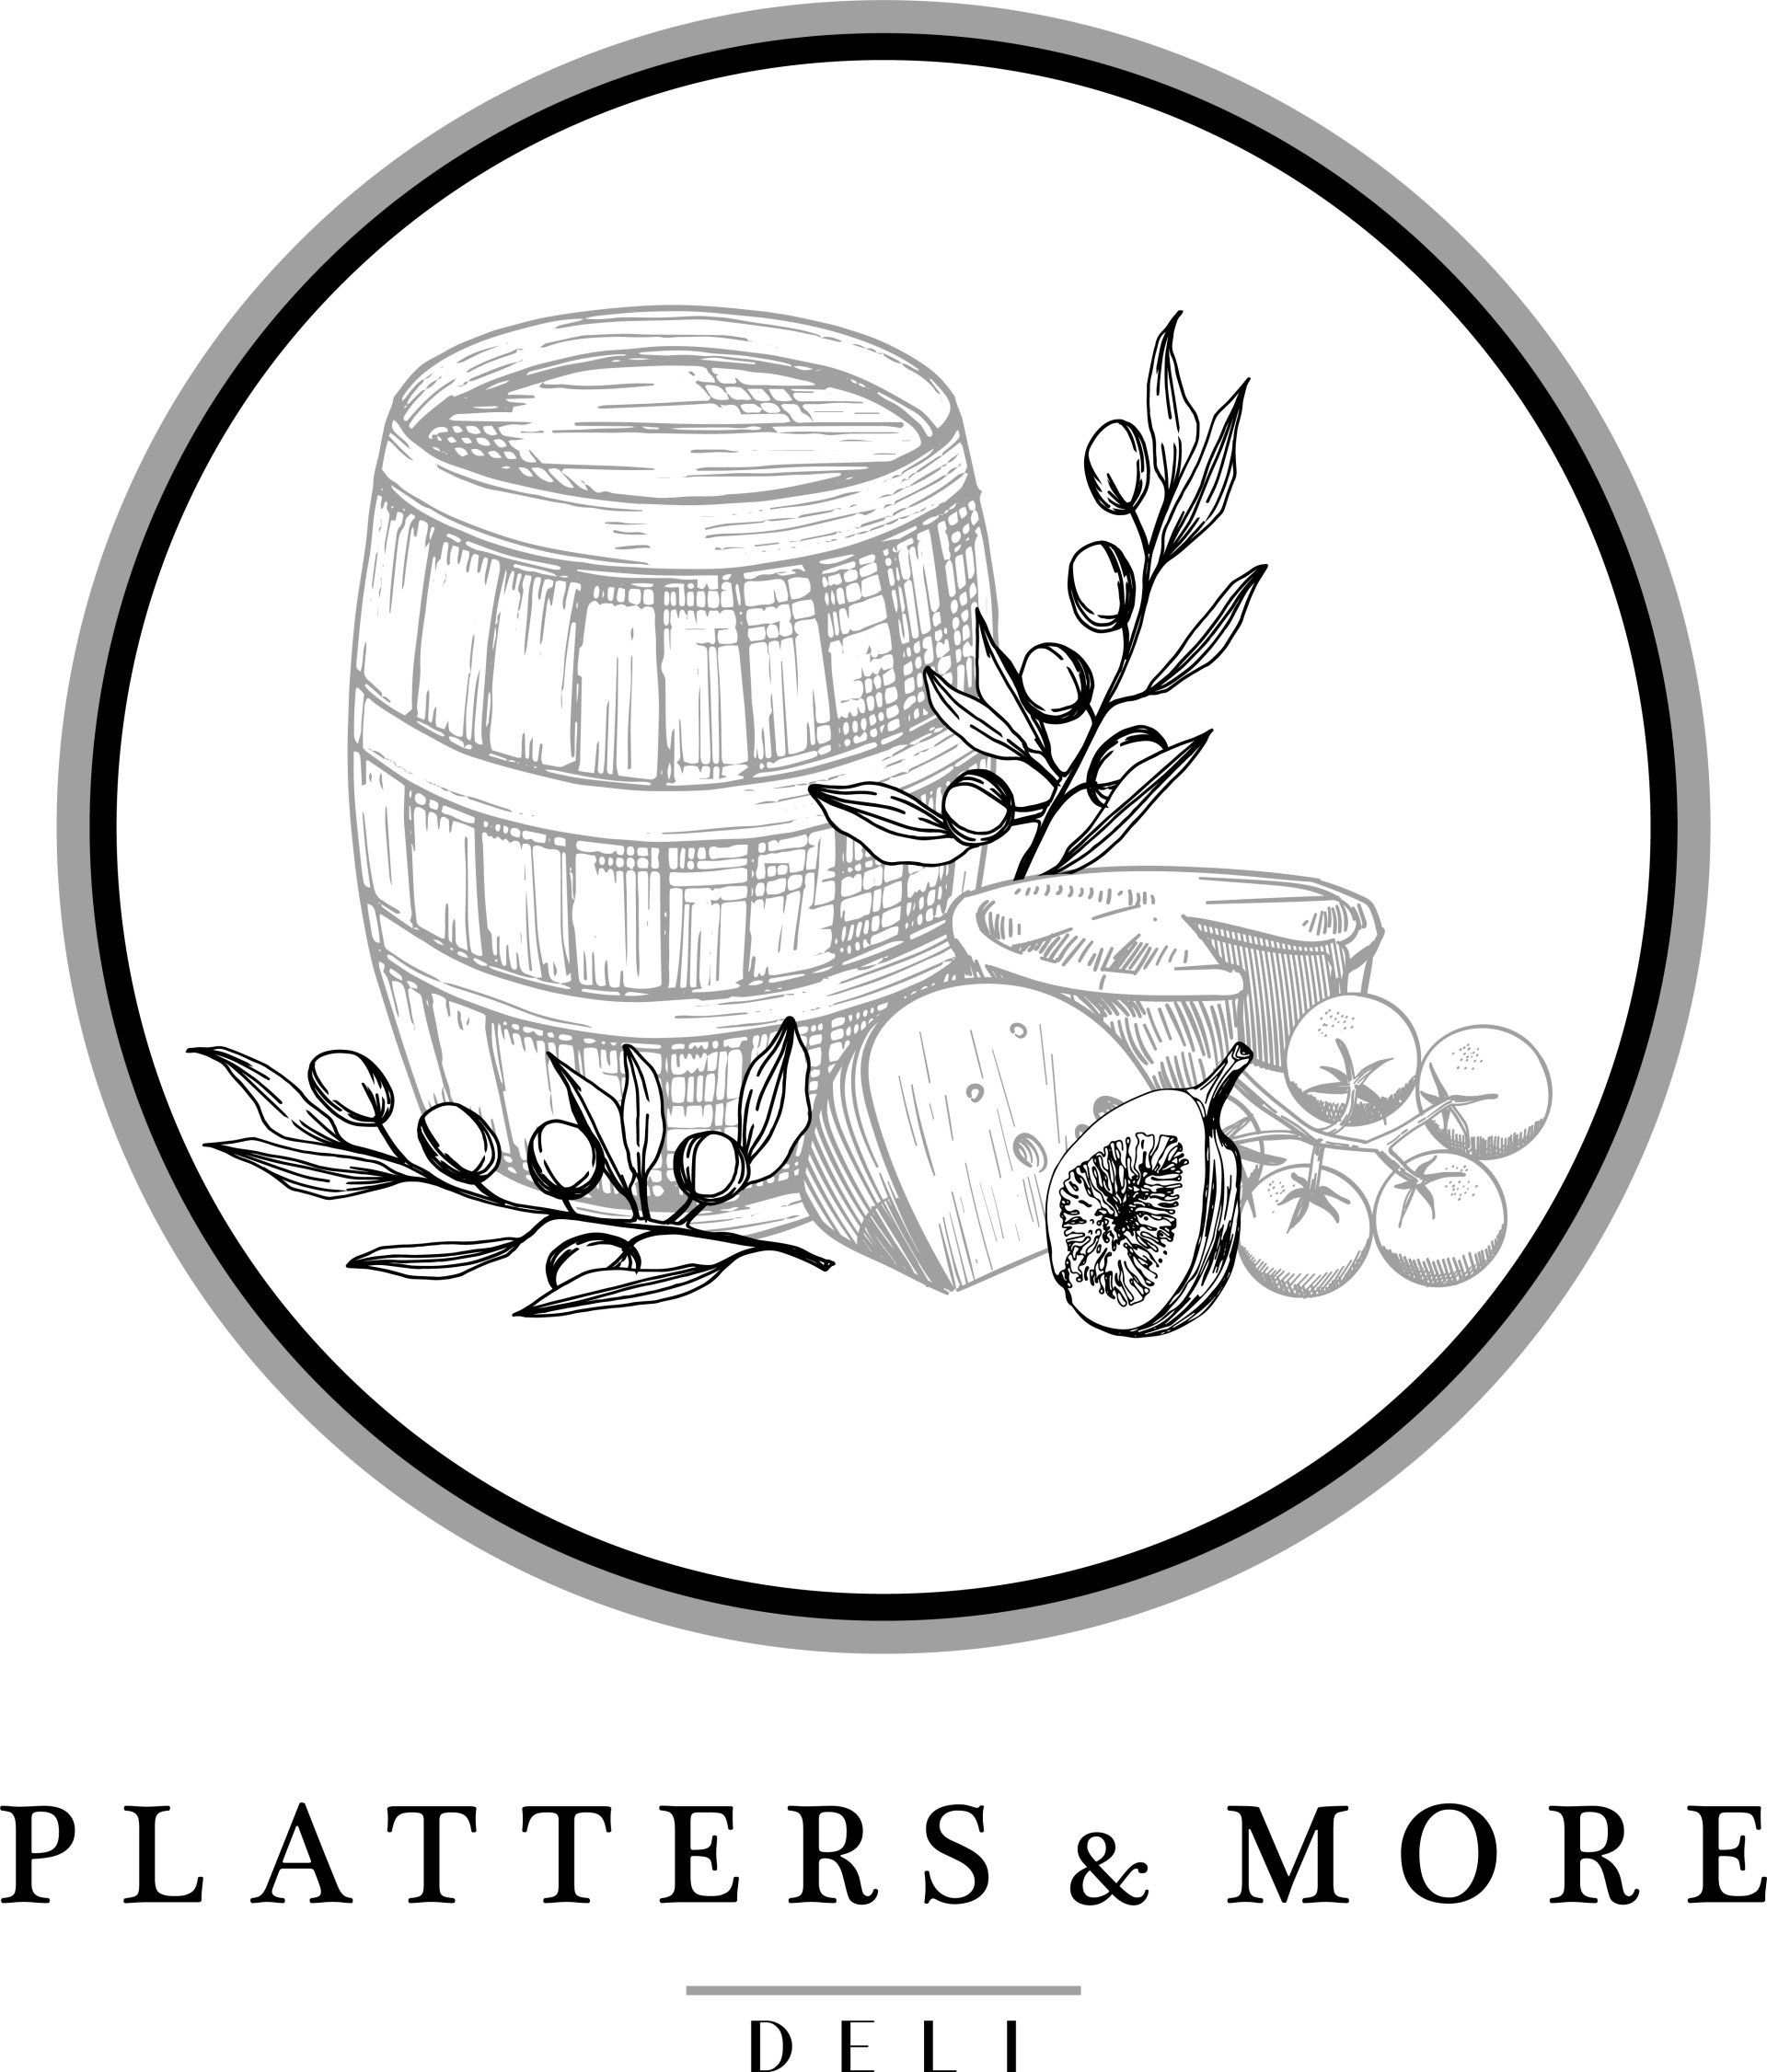 Platters & More Deli